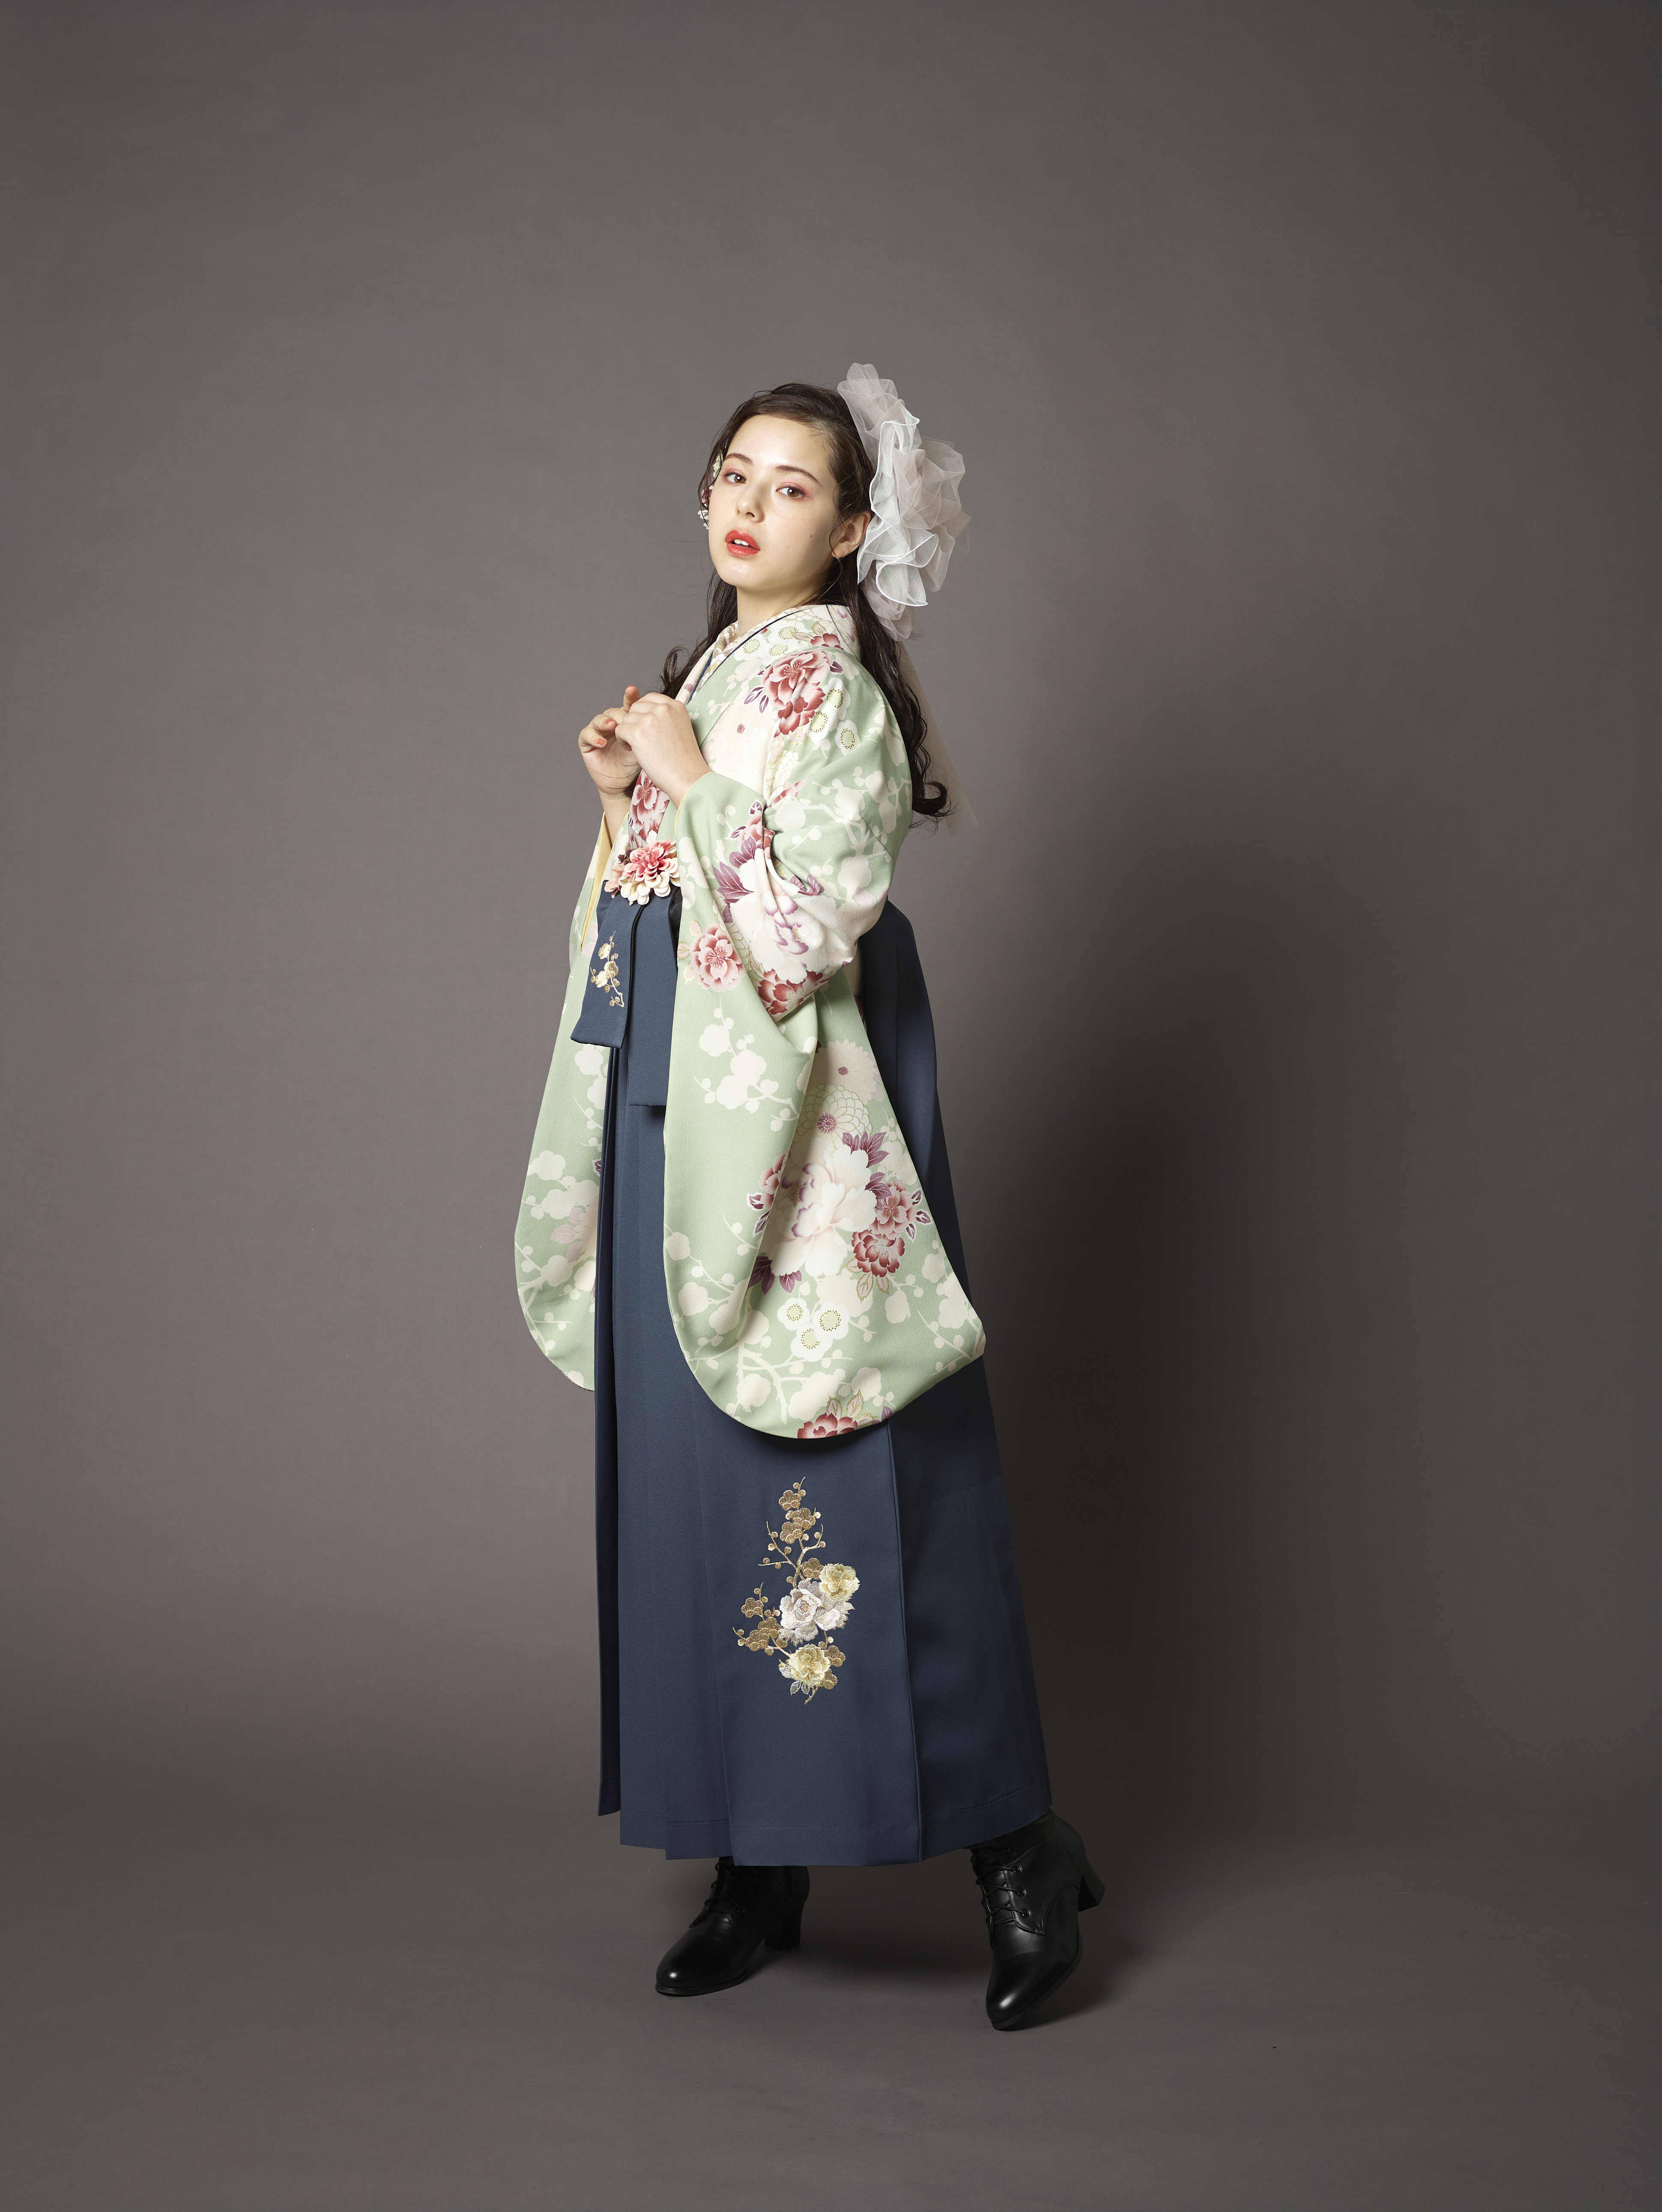 山本寛斎ブランドの、ミントグリーン地に白とピンクの花柄の二尺袖と、黒の袴の女性用卒業式袴を着用した全身写真